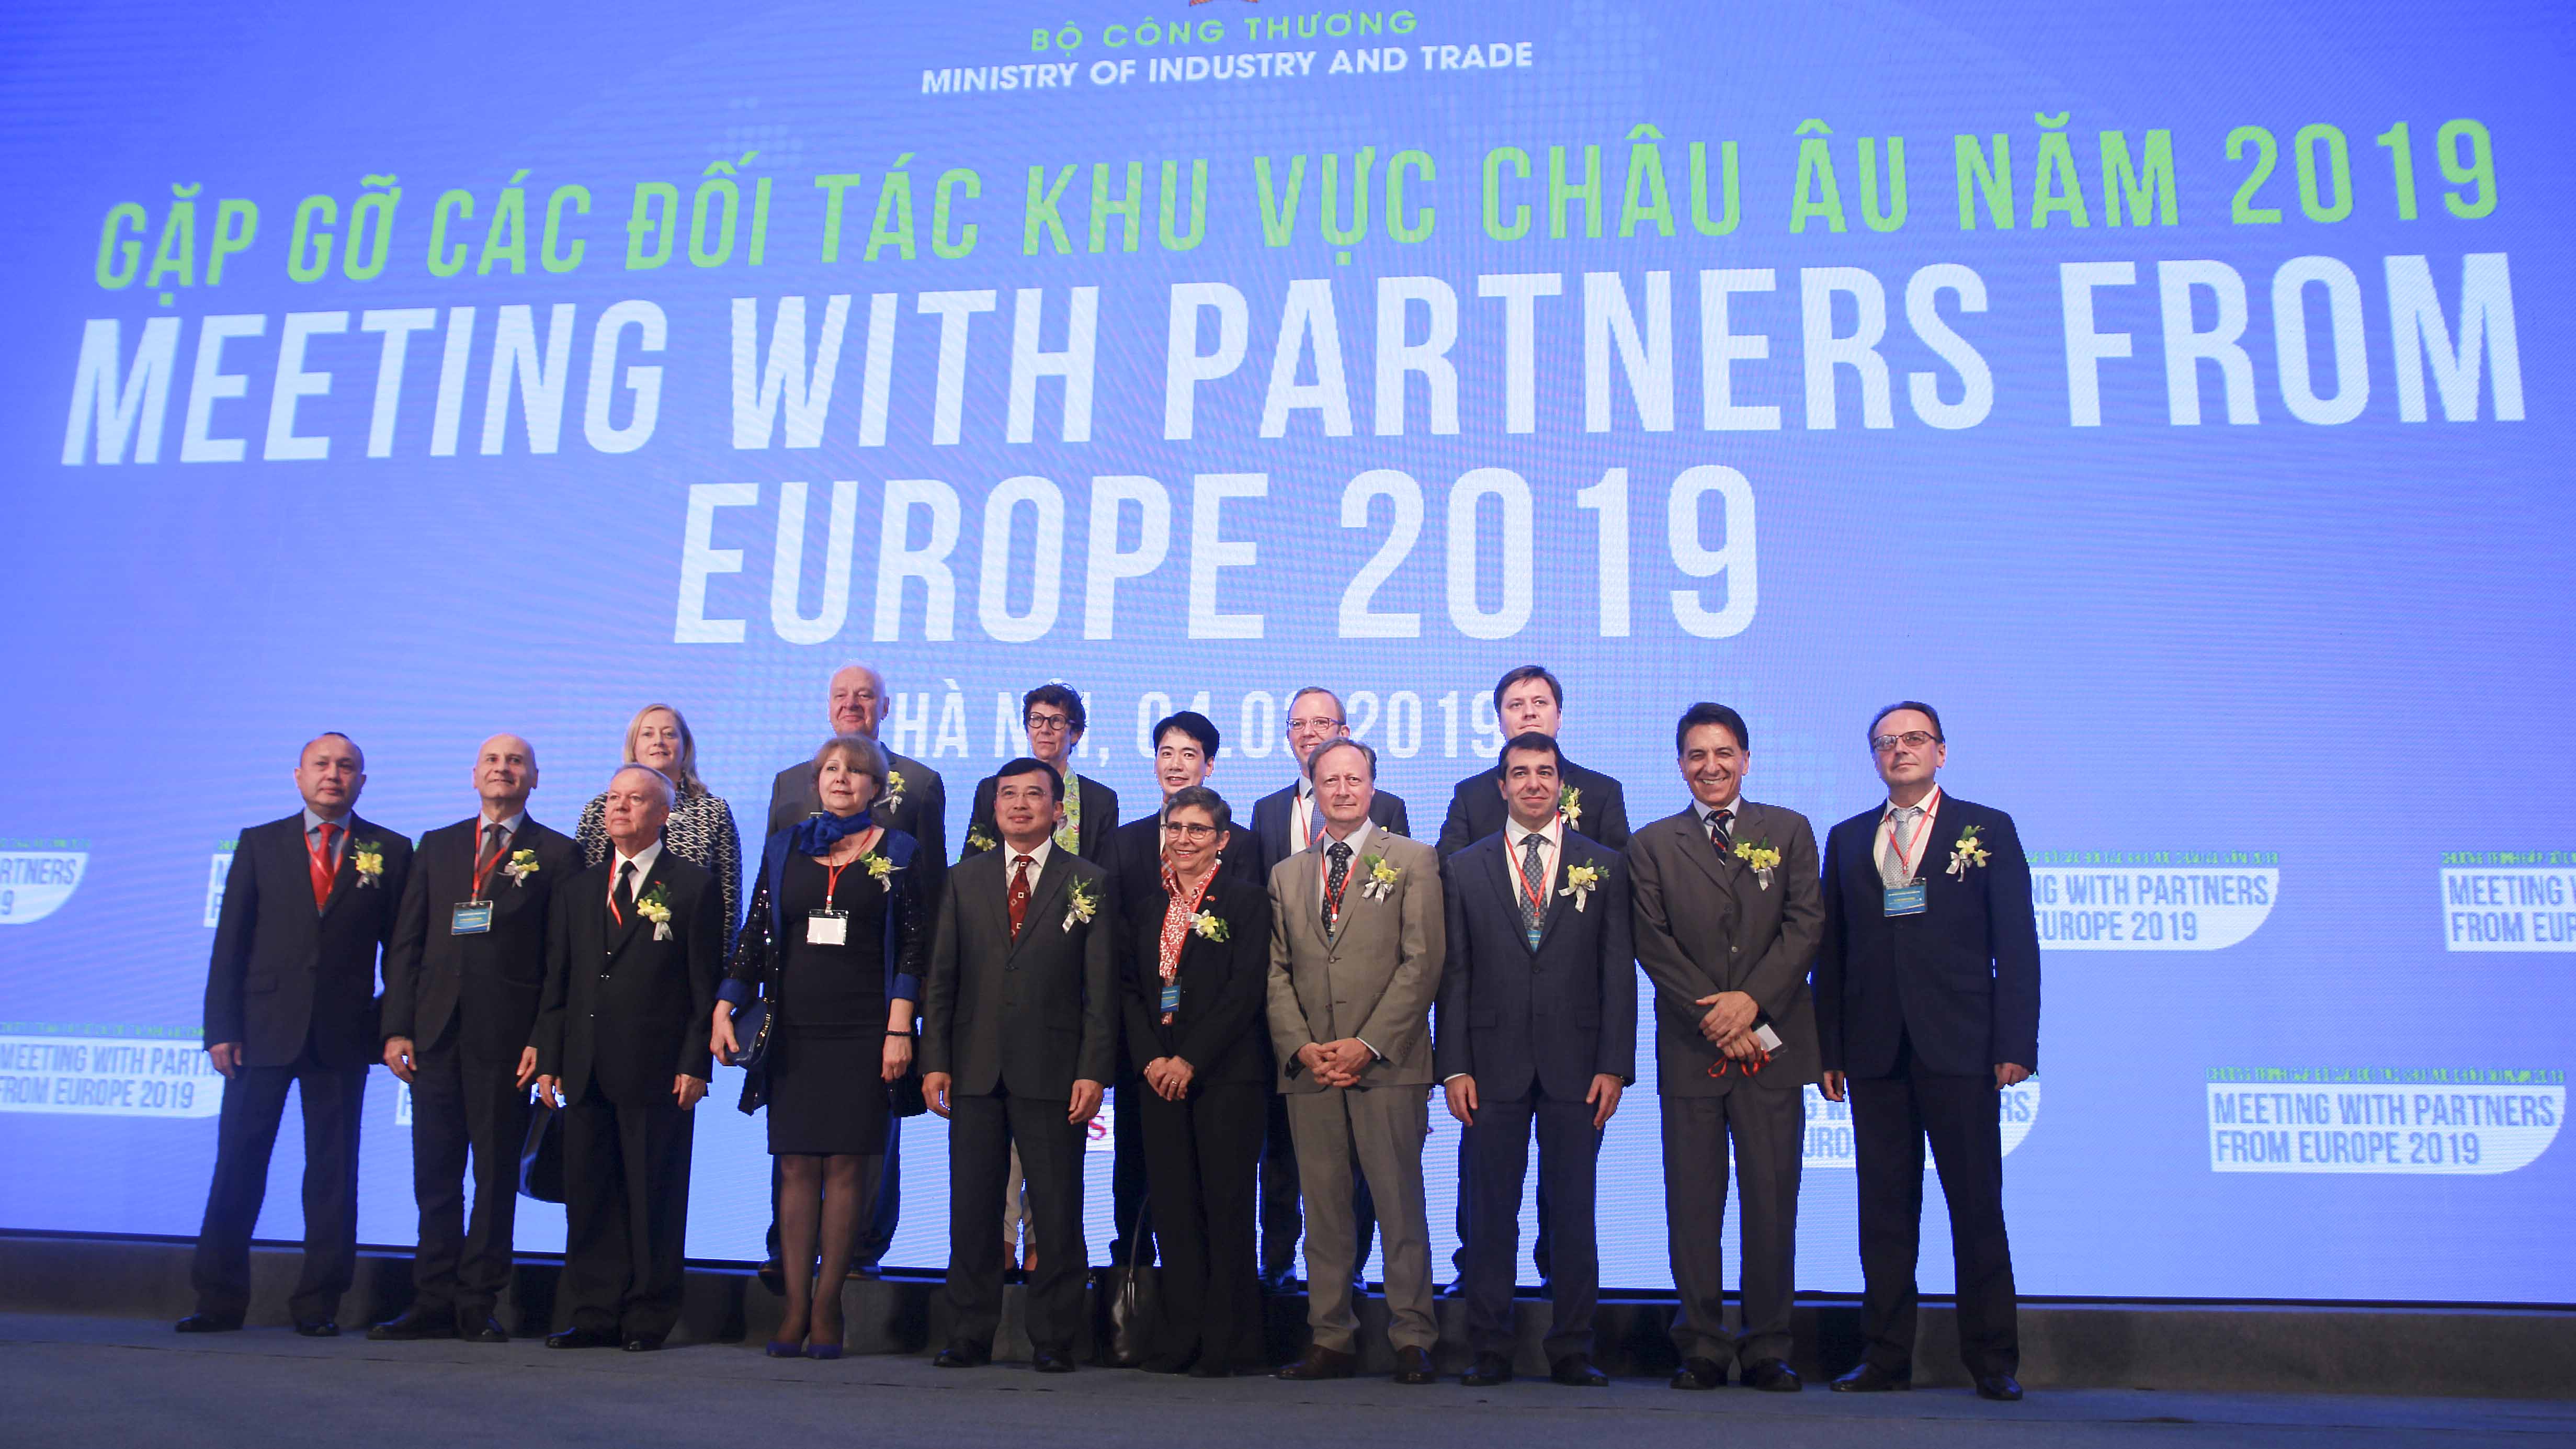 Gặp gỡ đối tác châu Âu năm 2019 Bộ Công Thương